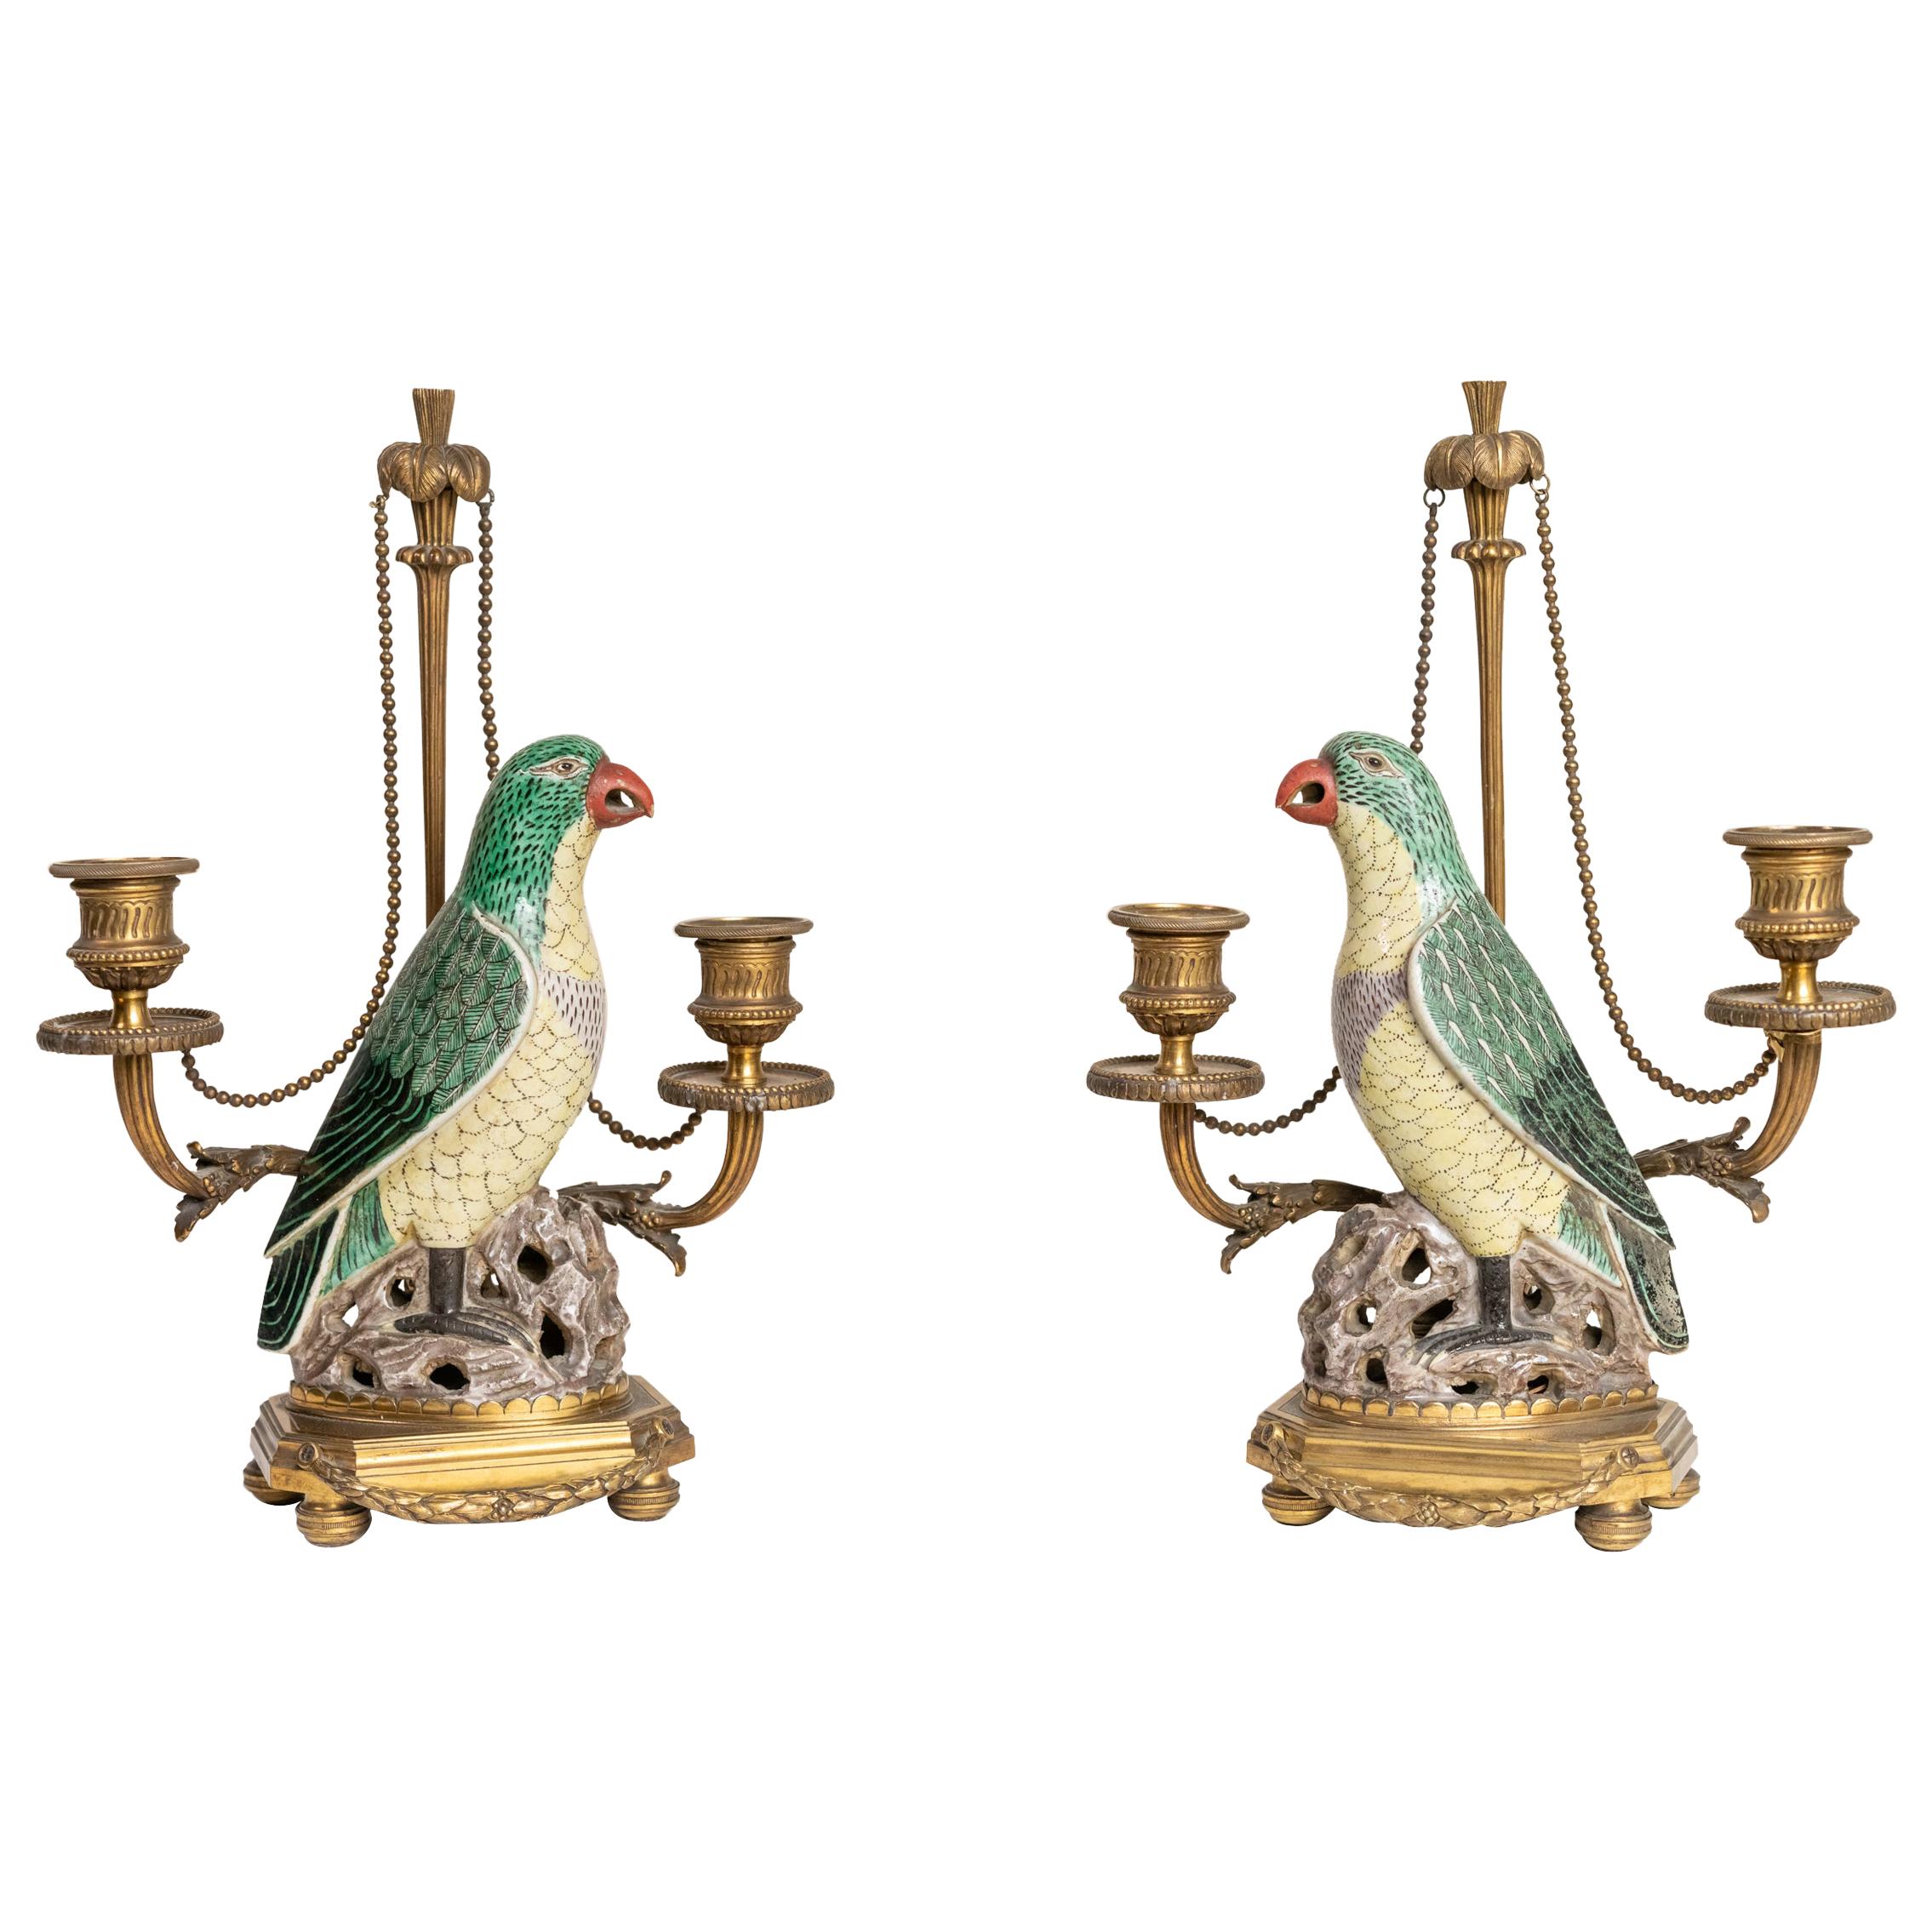 Seltenes Paar Papageien-Kandelaber aus chinesischem Porzellan aus dem 18. und 19. Jahrhundert